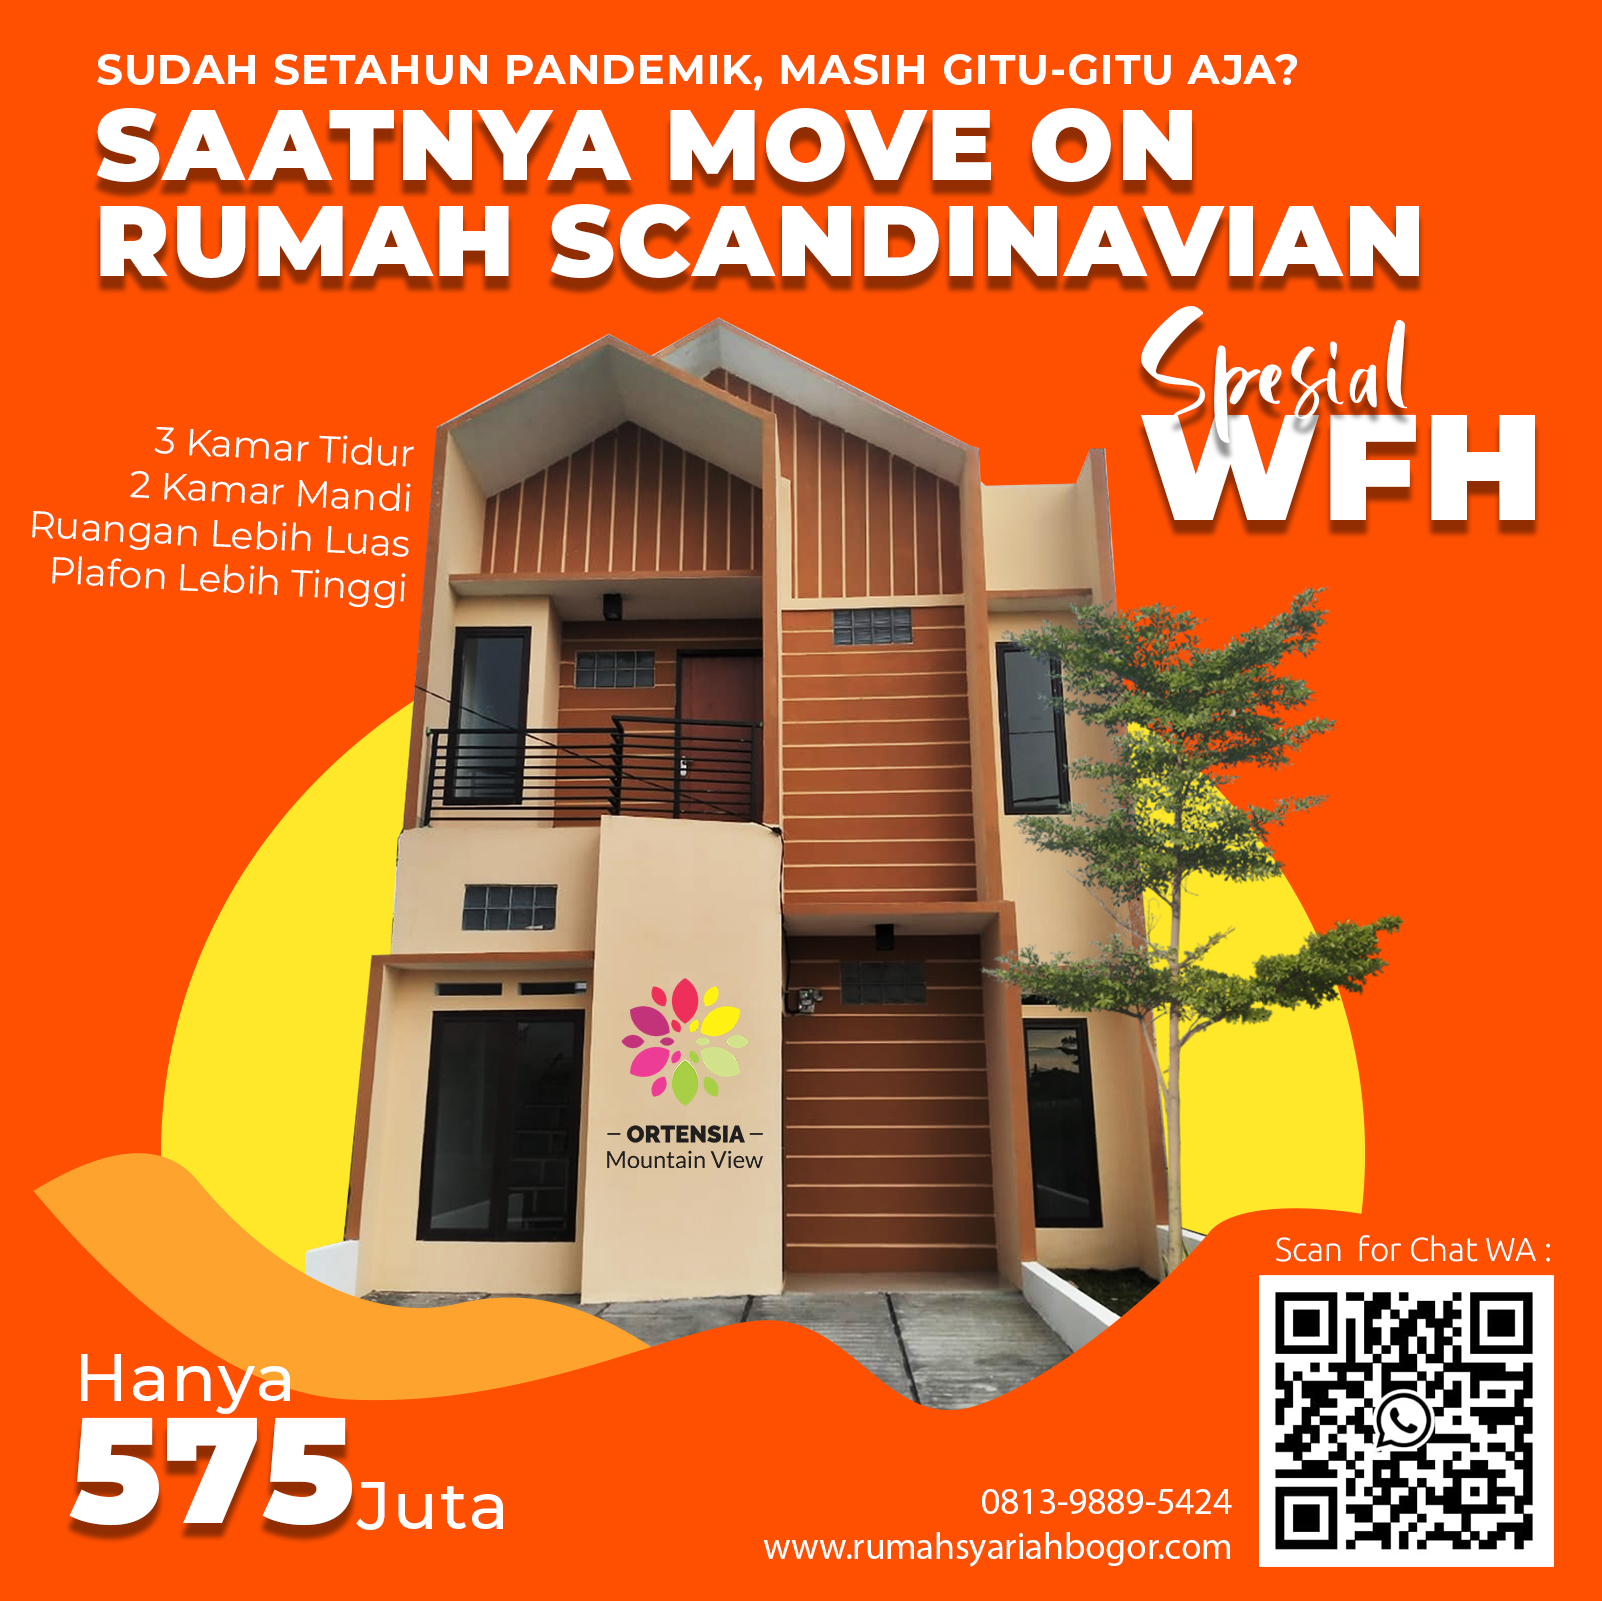 Mengenal Rumah Scandinavian Spesial WFH di Ciomas Bogor